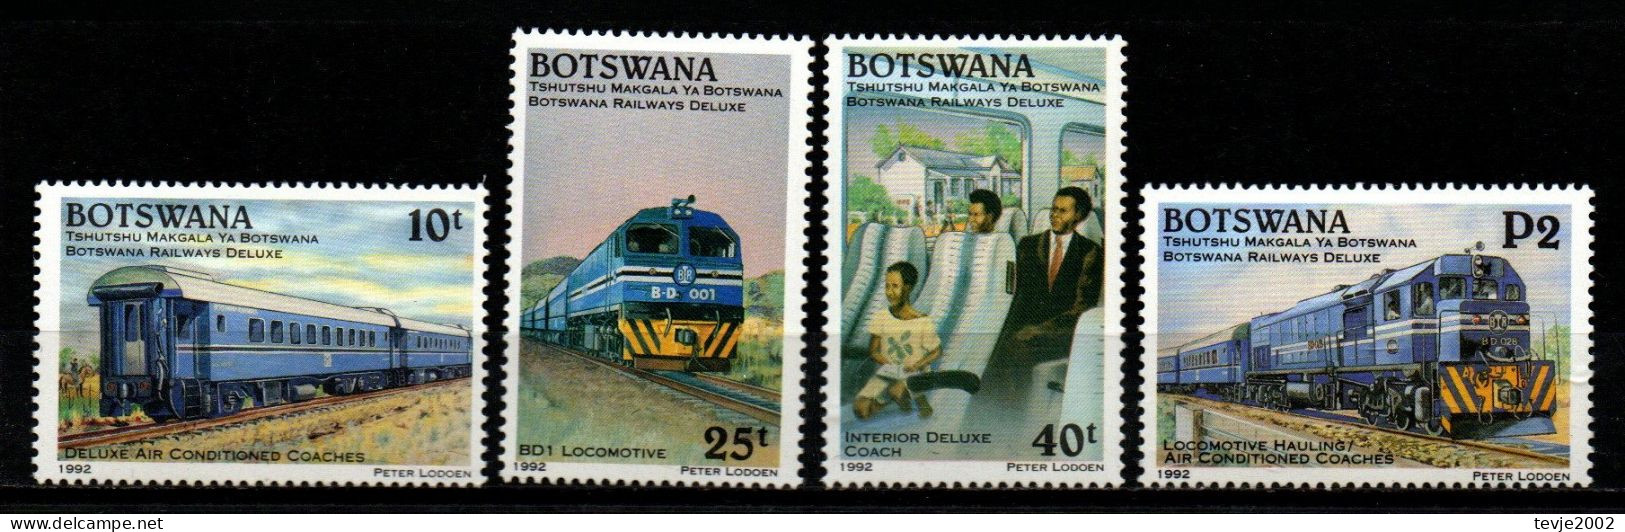 Botswana 1992 - Mi.Nr. 513 - 516 - Postfrisch MNH - Eisenbahnen Railways - Trains